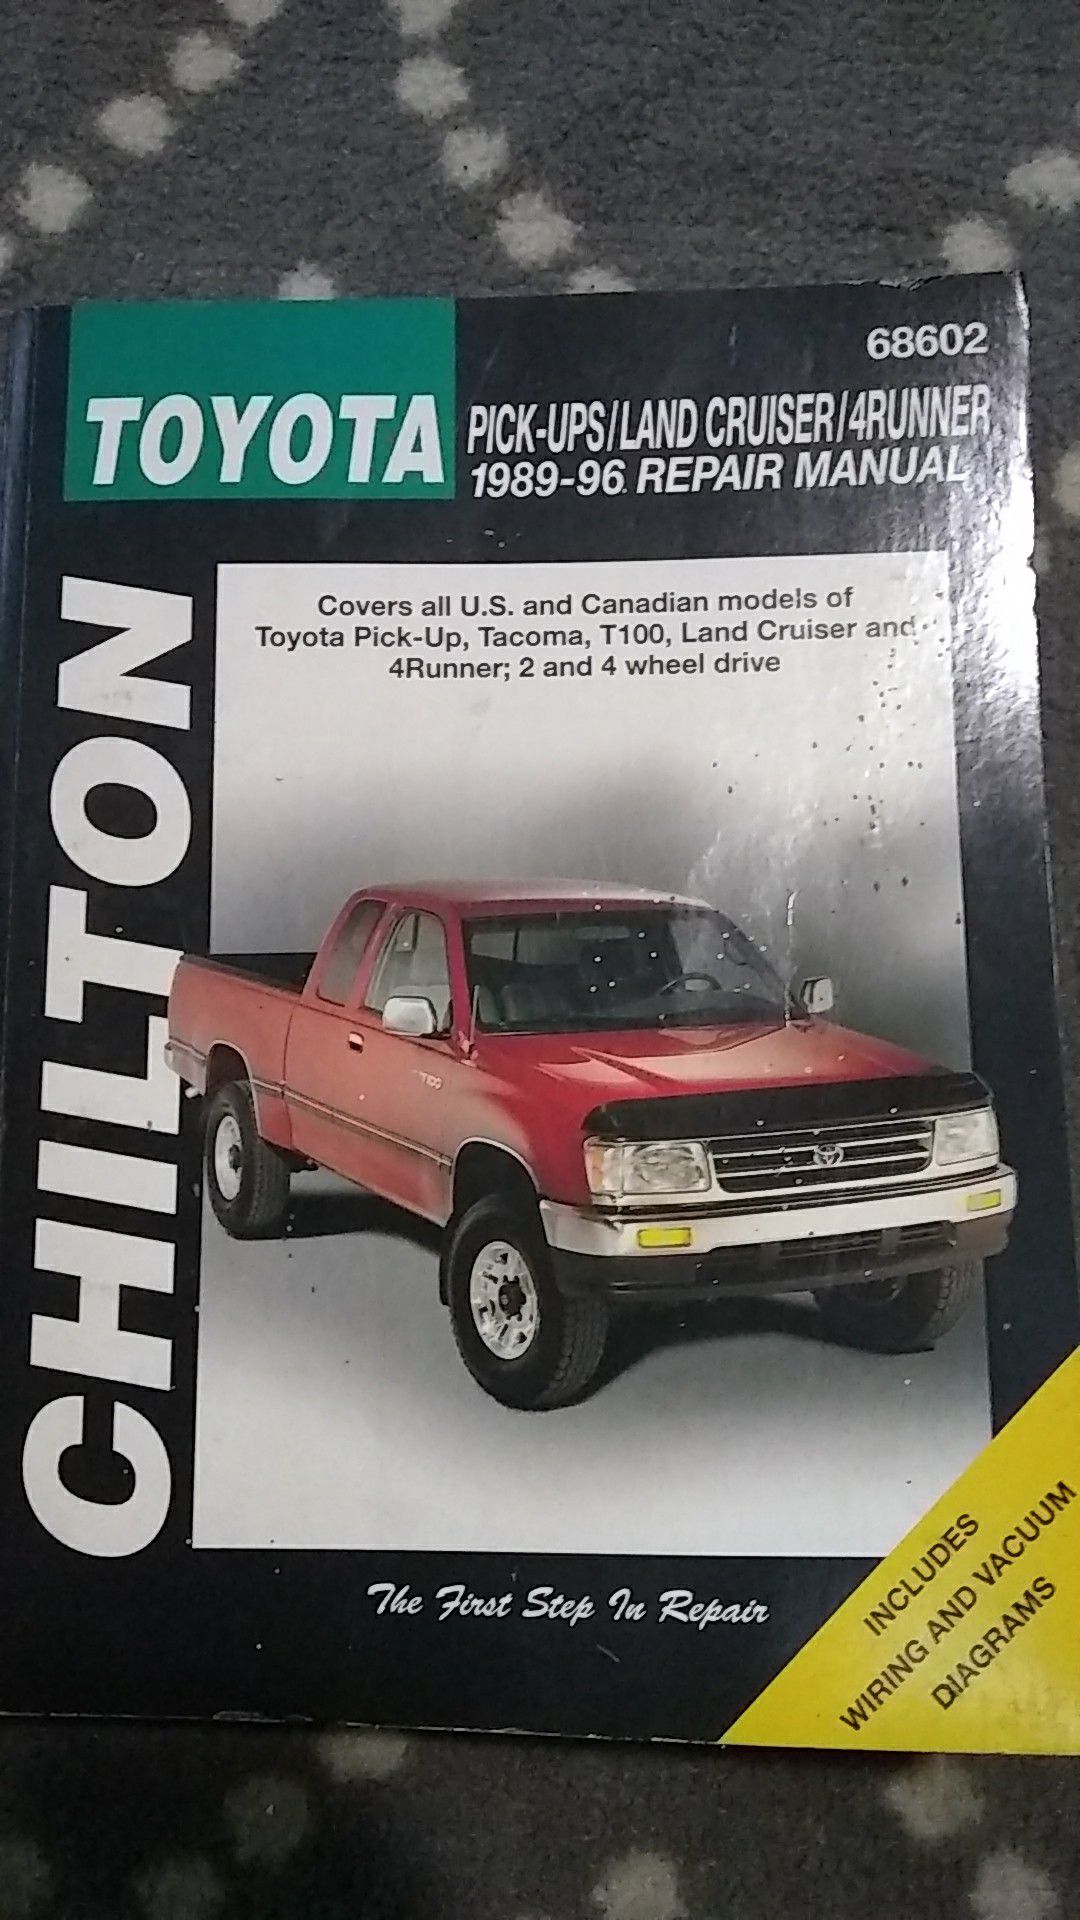 89-96 Chilton Toyota/Land cruiser/4Runner